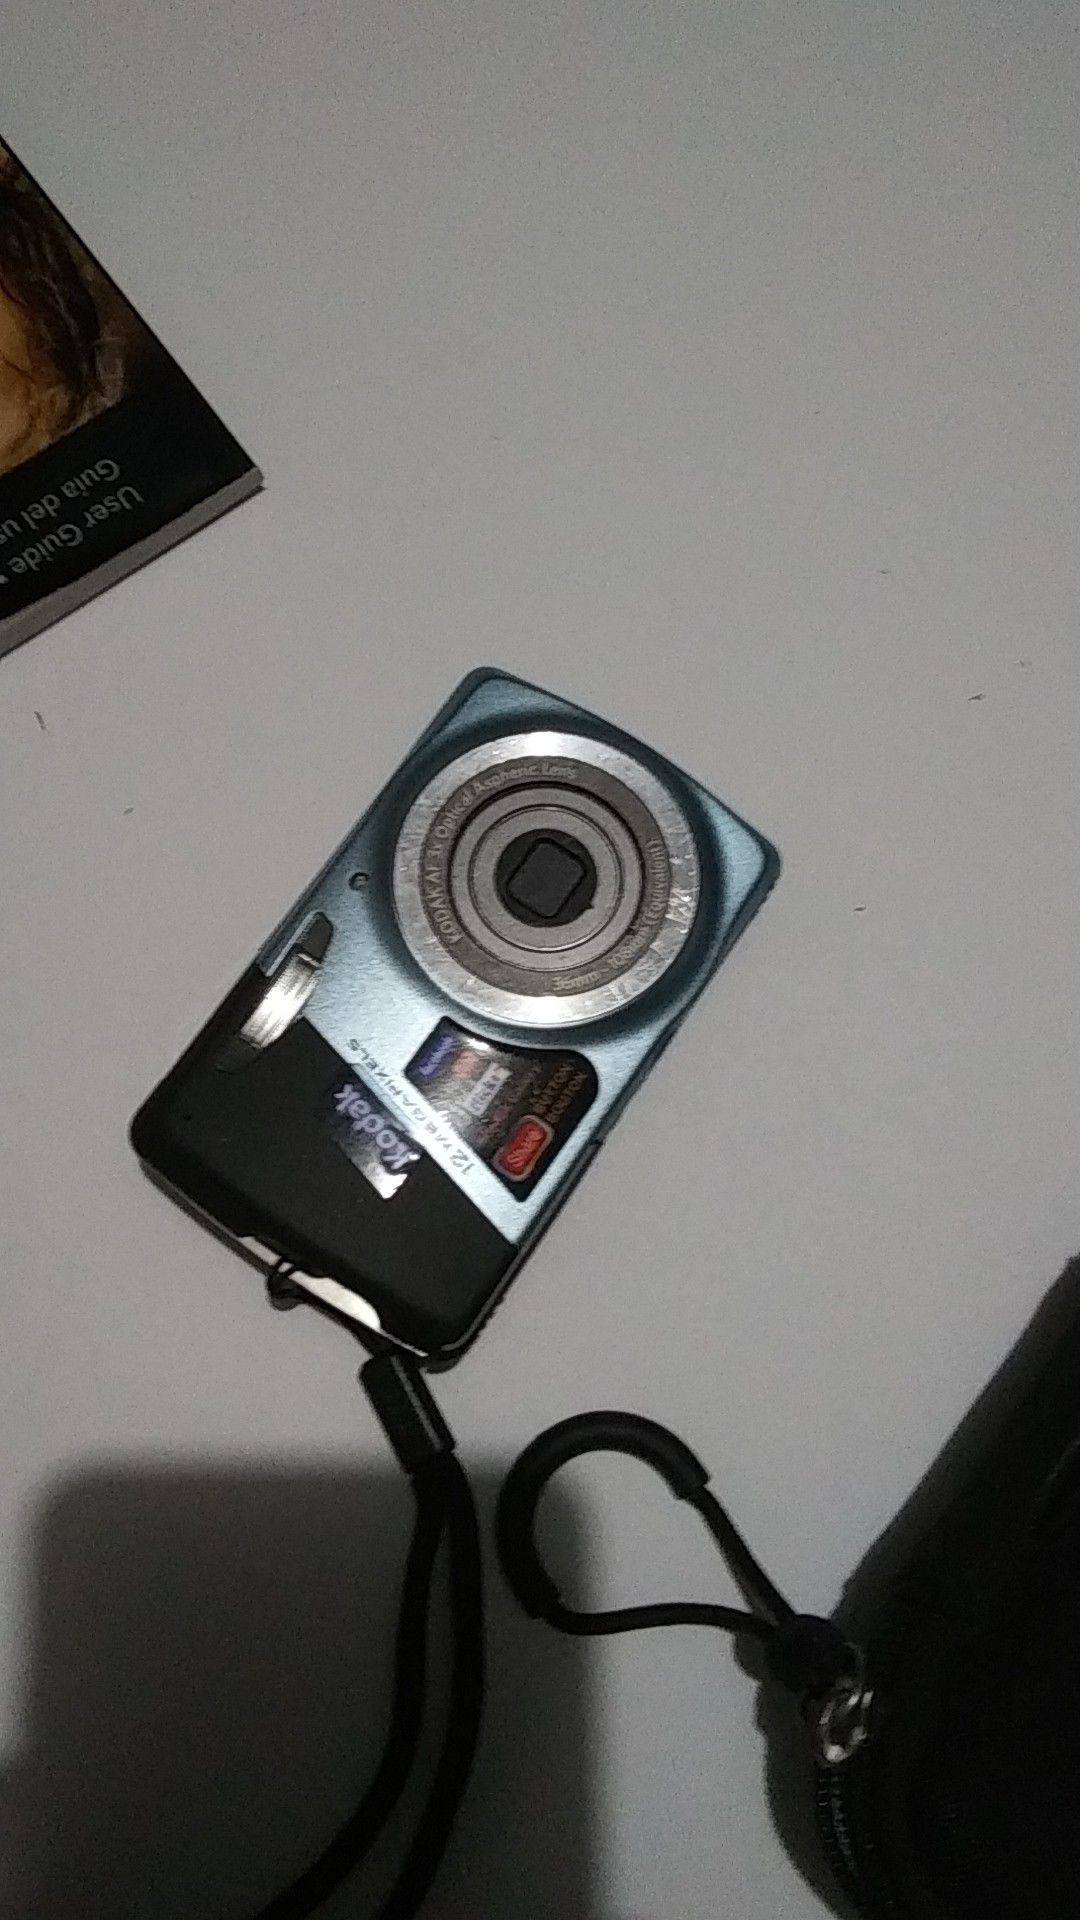 KODAK 35MM camera